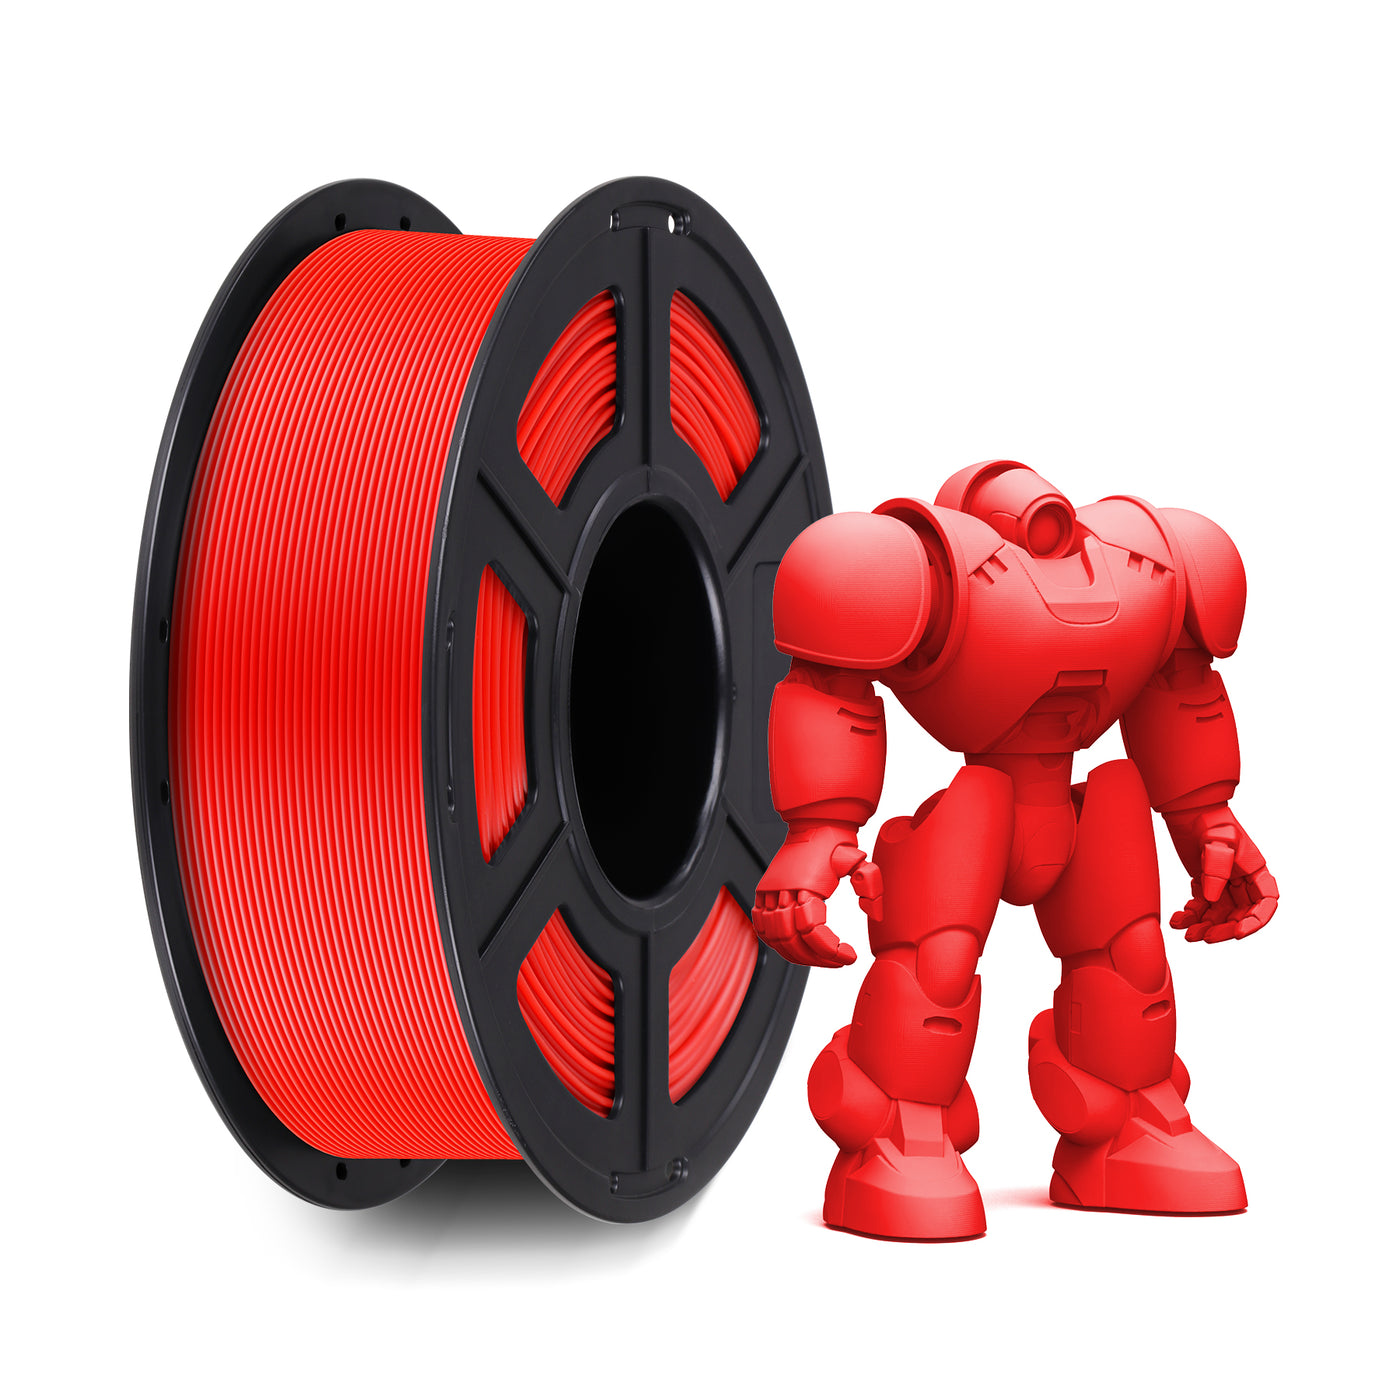 Anycubic Filamento per Stampante 3D PLA da 1.75mm: Materiale per la Stampa  3D Affidabile e Versatile – ANYCUBIC-IT